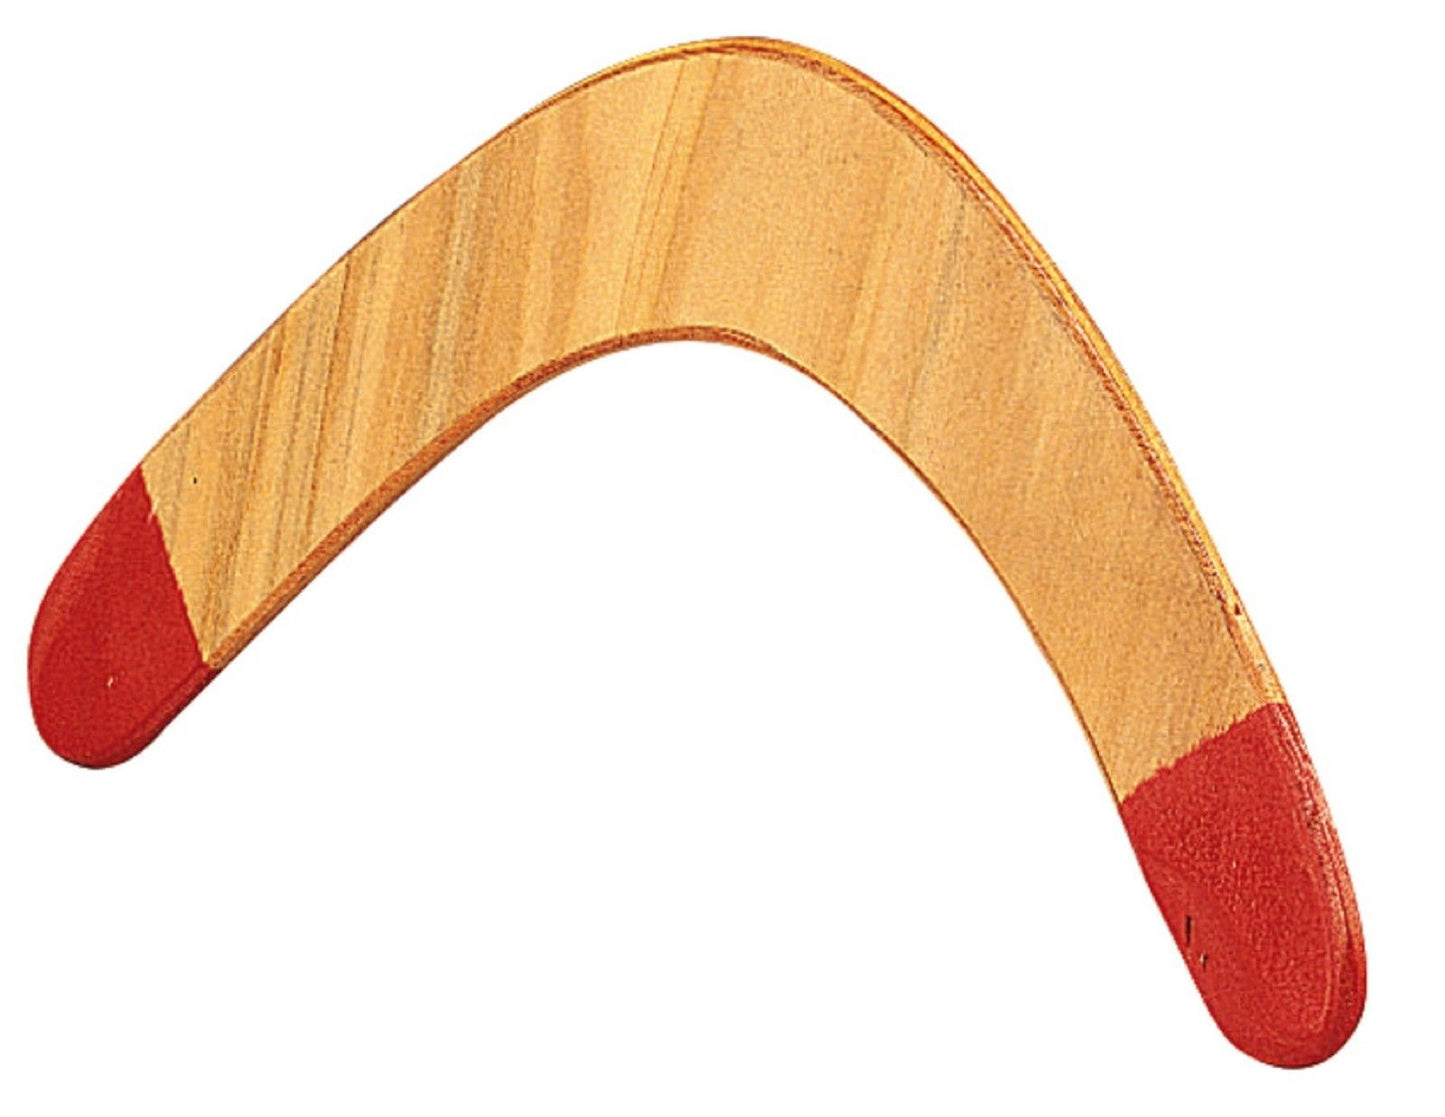 Boomerang - Durable Lightweight Wood Australian Boomerangs 18" x 7" Throw Stick